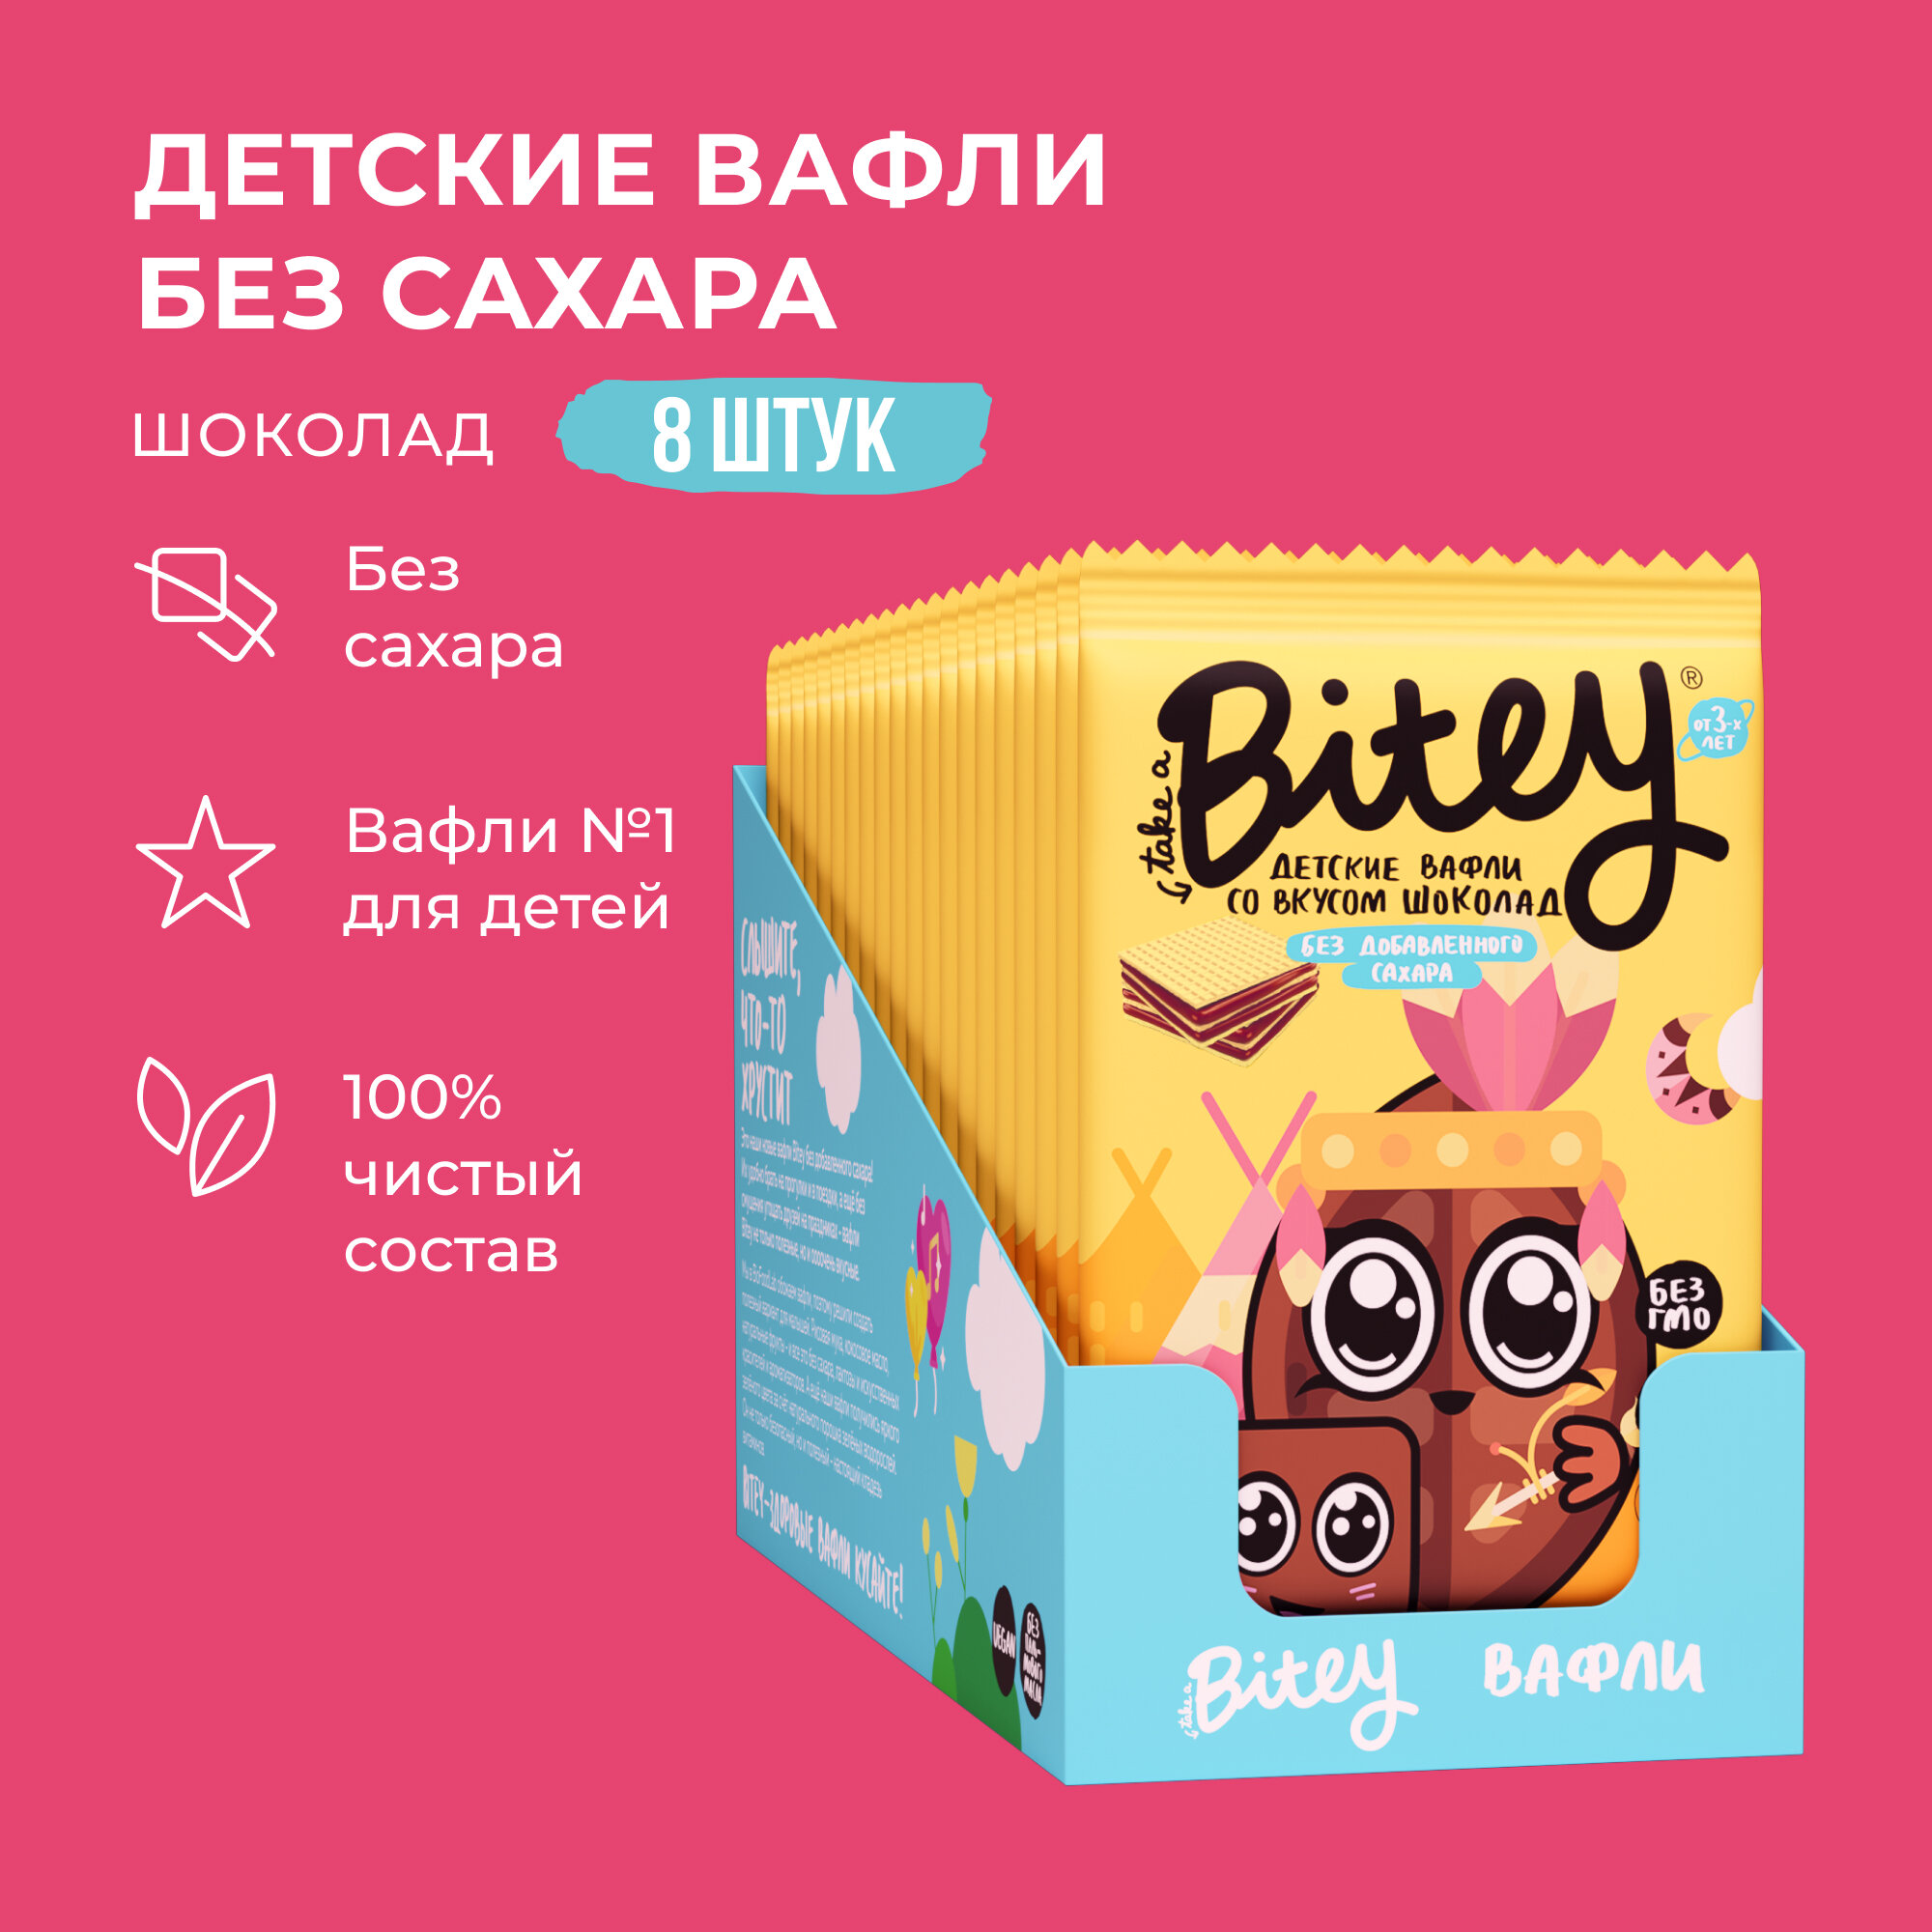 Набор Вафли детские Bitey Шоколад, 8 шт. по 35 г с СГР